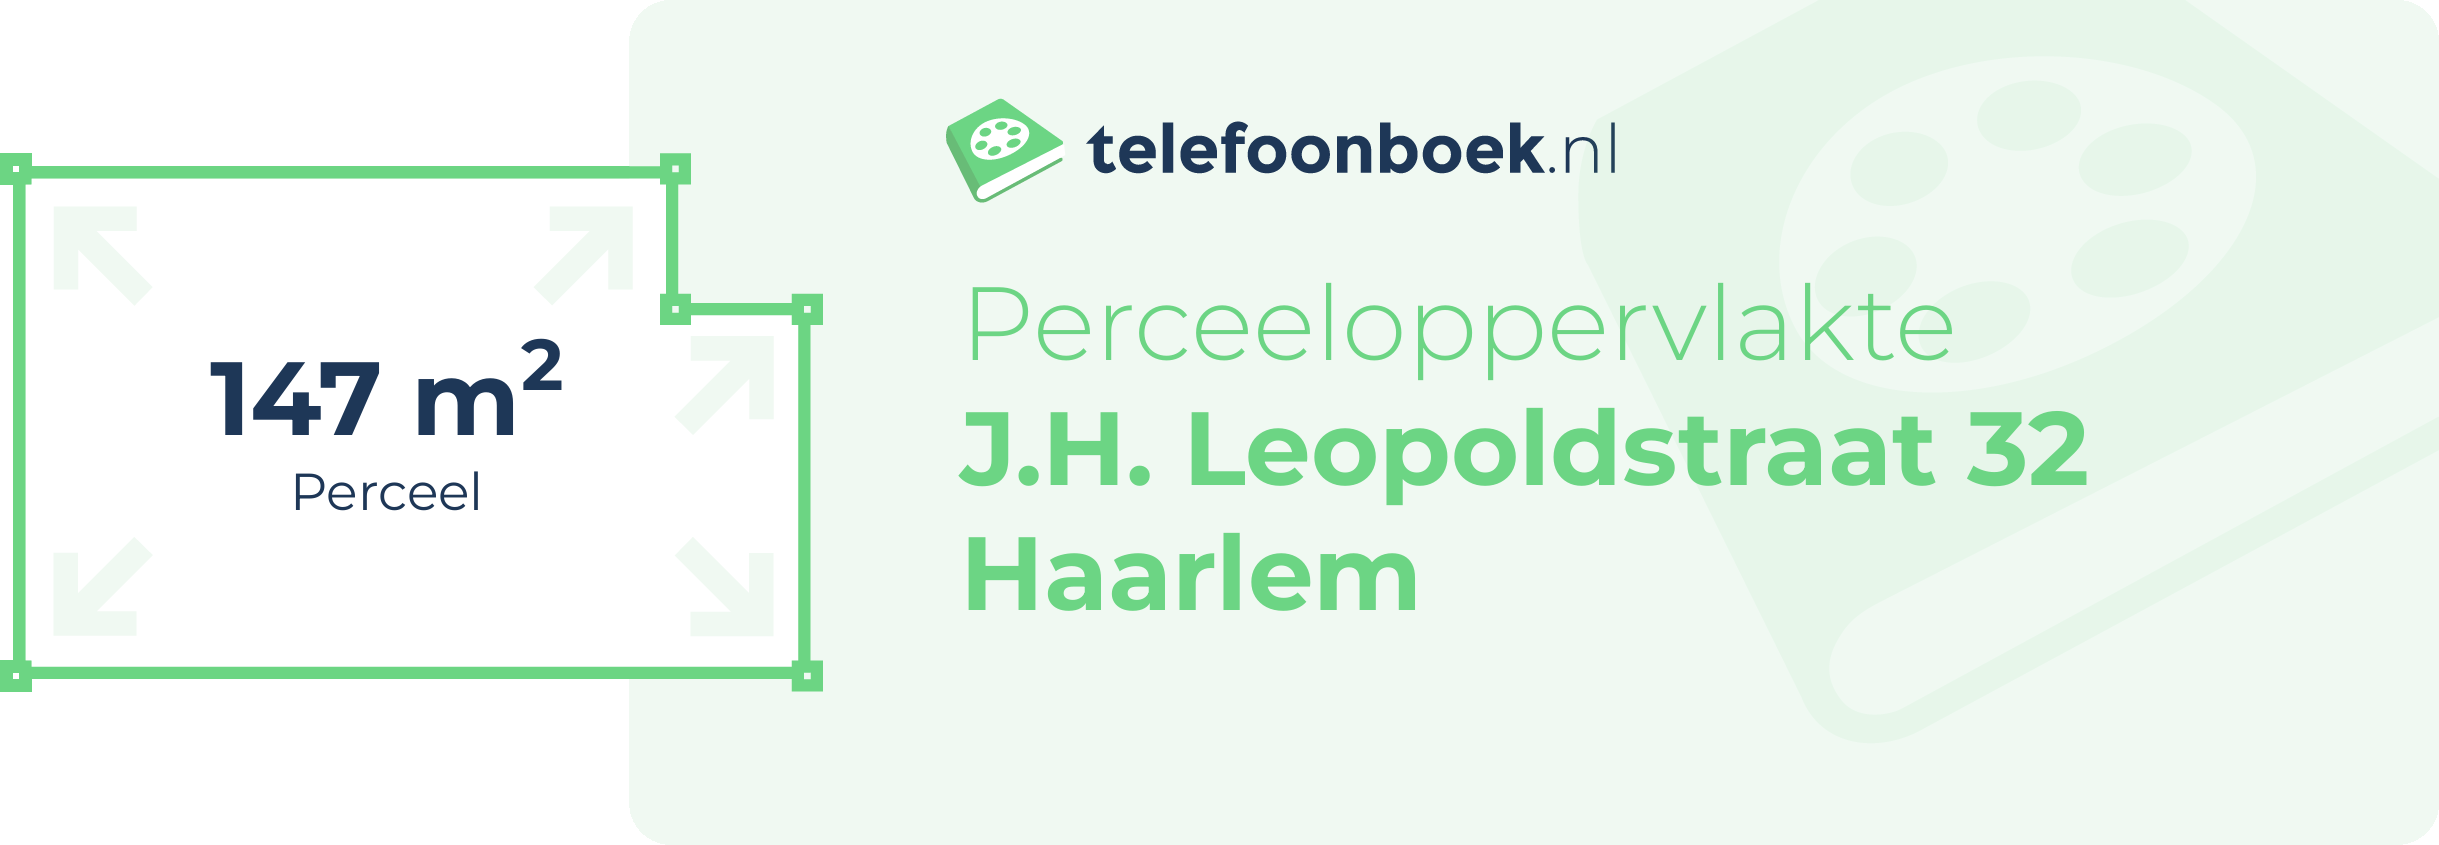 Perceeloppervlakte J.H. Leopoldstraat 32 Haarlem